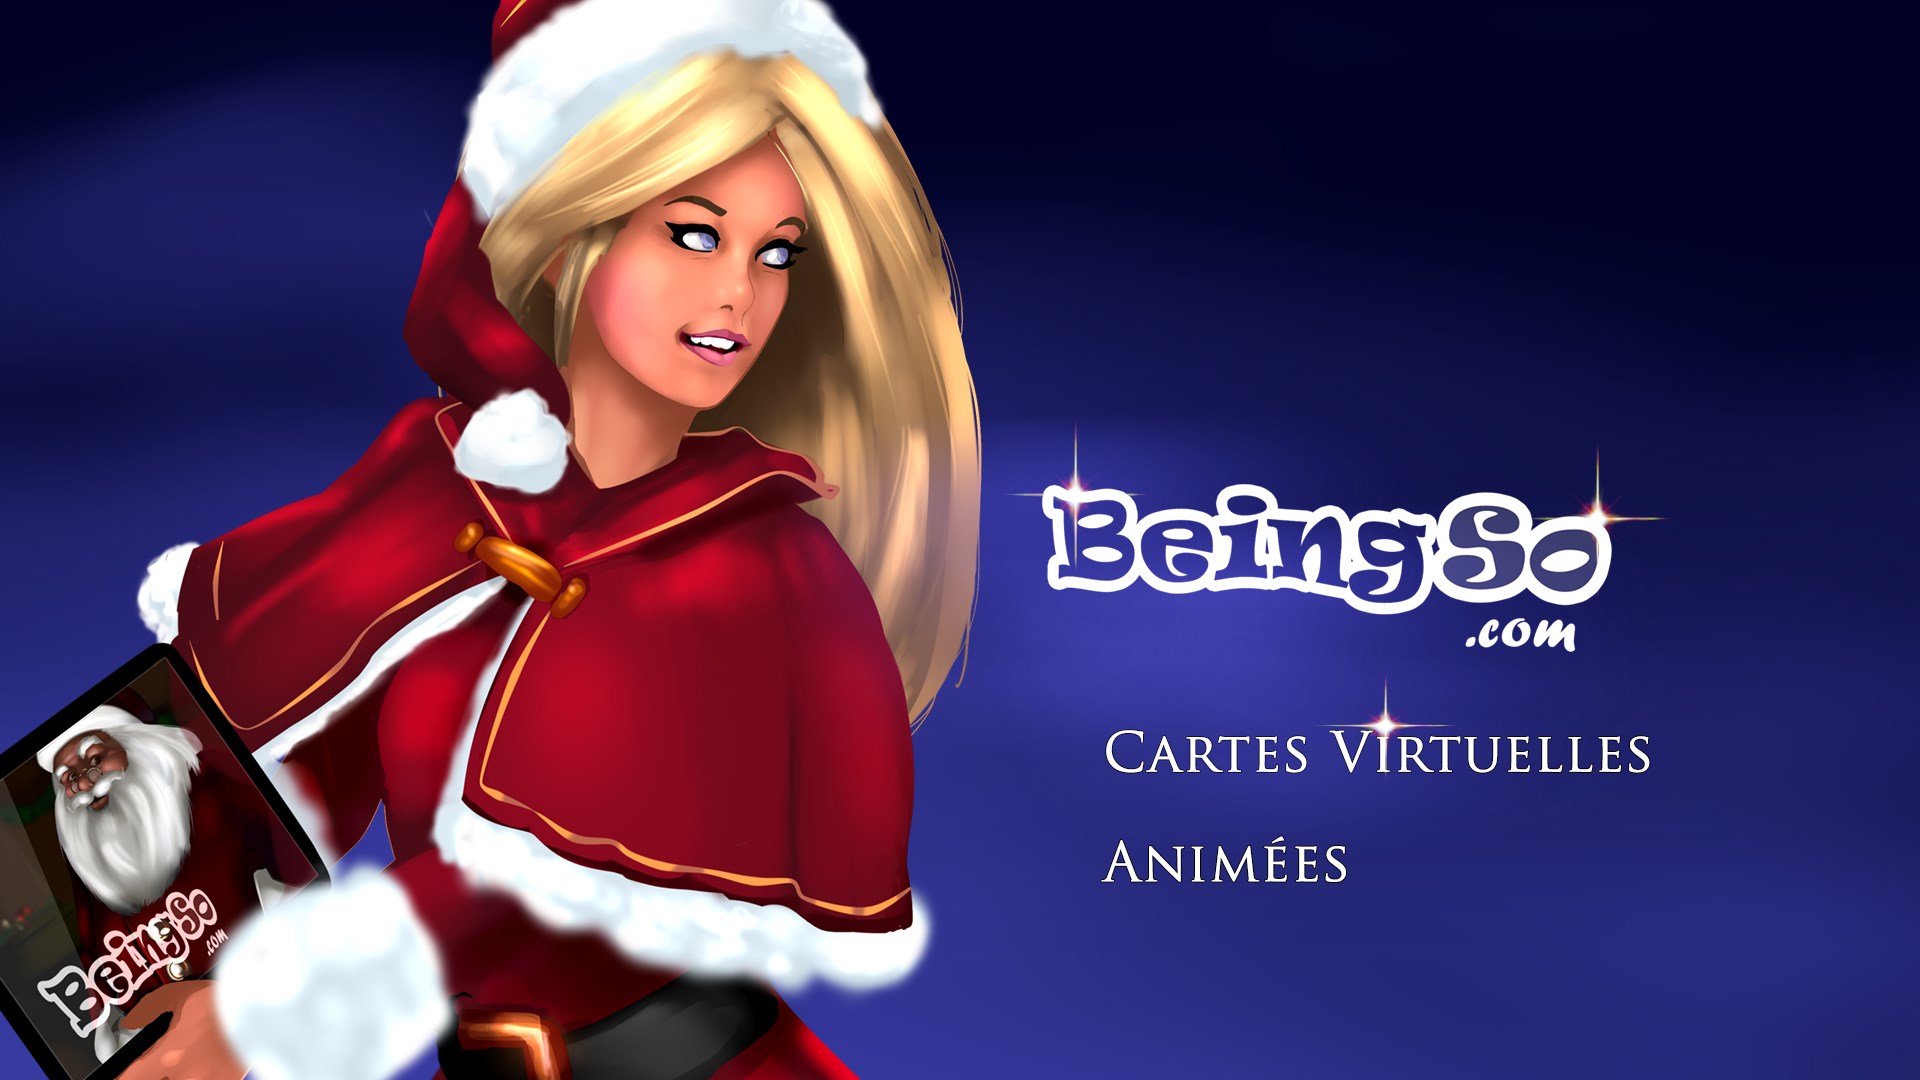 Recevoir Cartes Virtuelles Animees Beingso Com Noel Nouvel An 18 Joyeux Anniversaire Microsoft Store Fr Fr